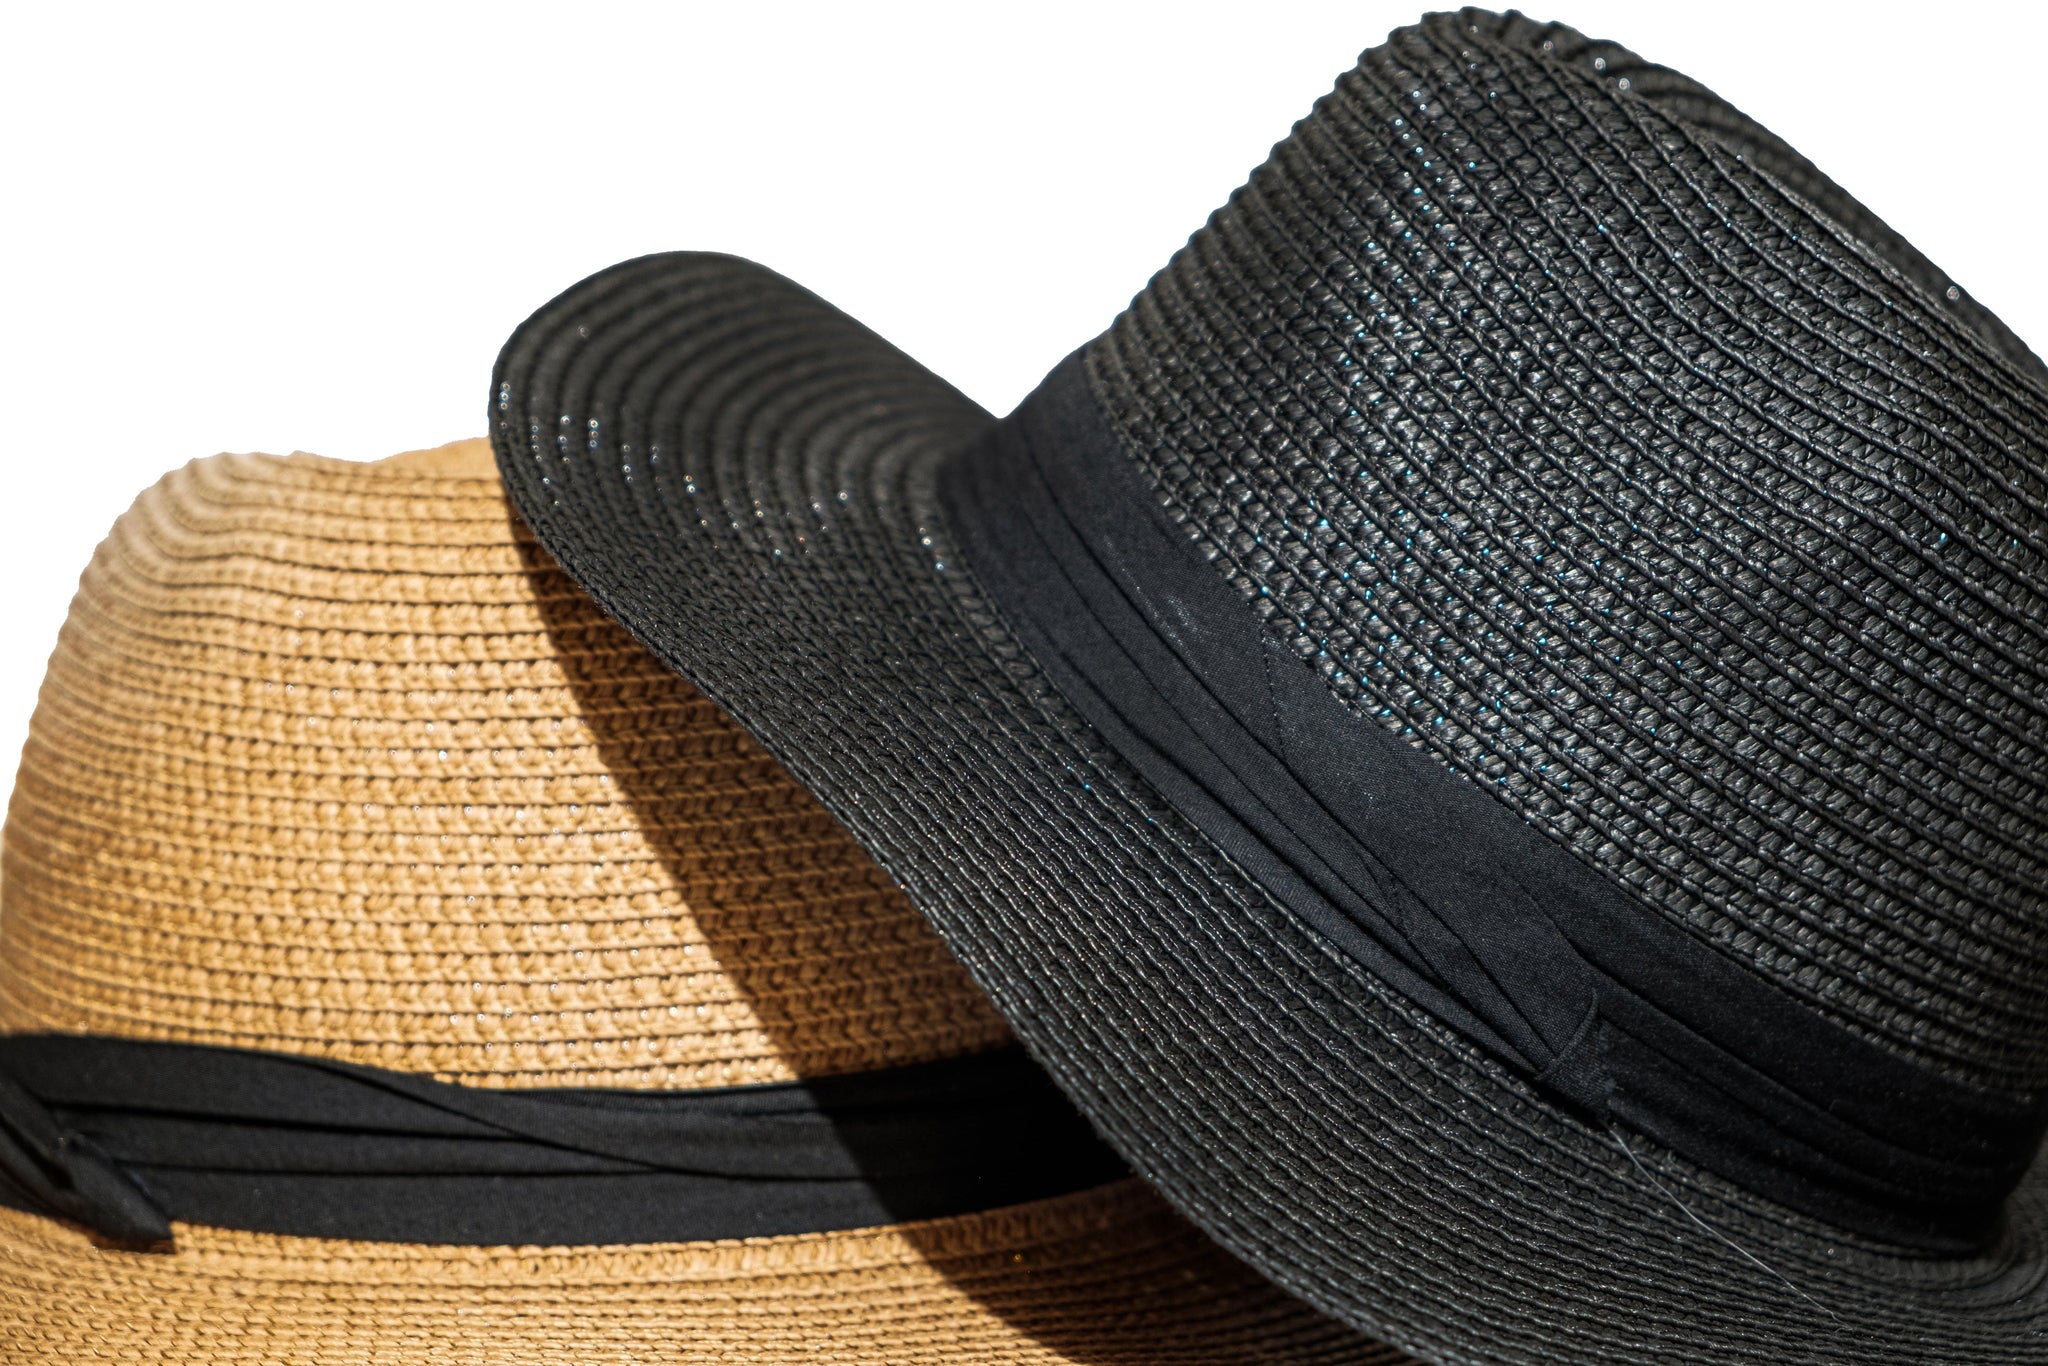 Chokore Summer Straw Hat (Light Brown)